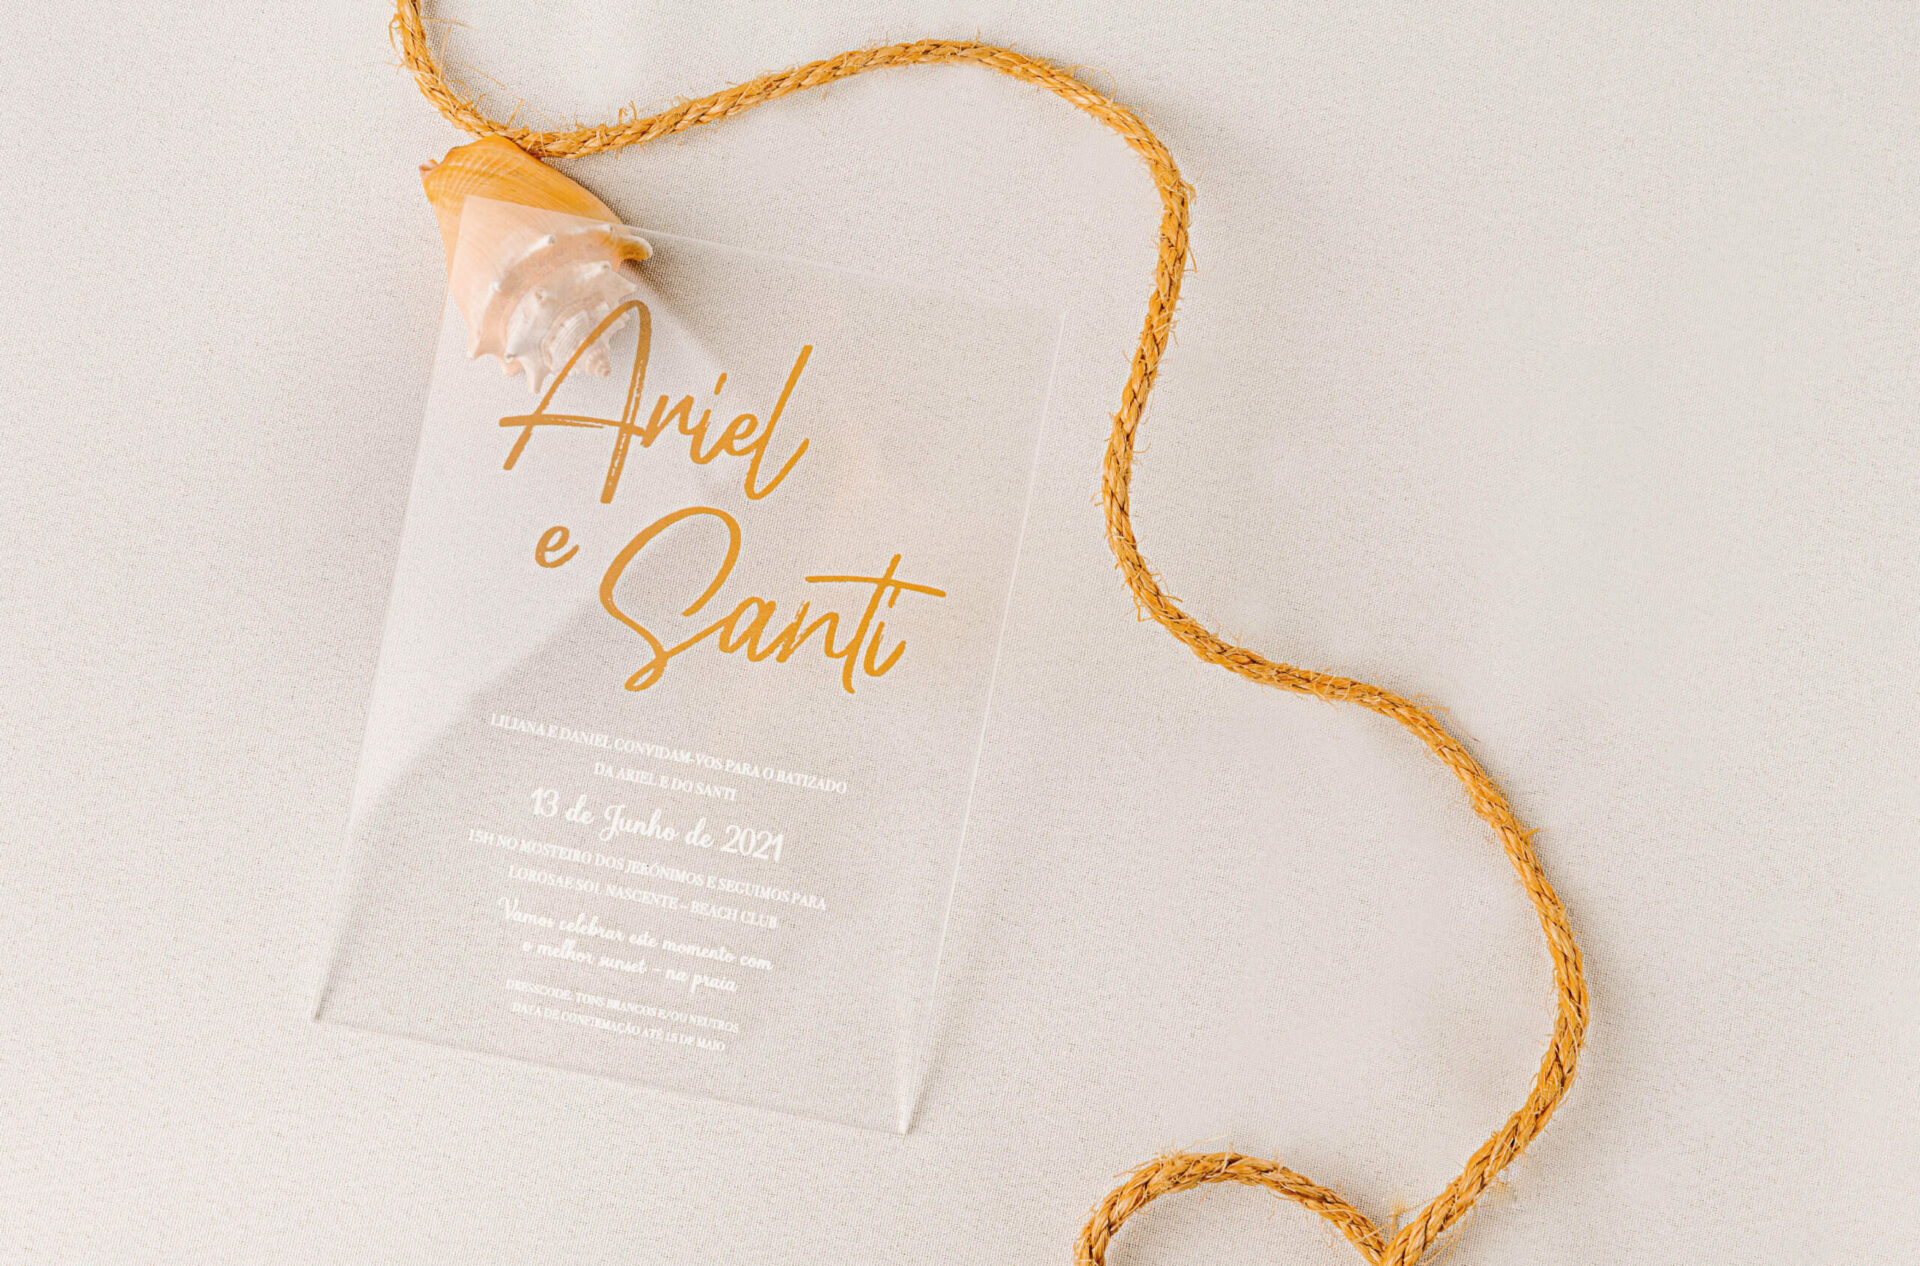 Convite de batizado de acrilico com impressão a branco e foil dourado com um cordão amarelo